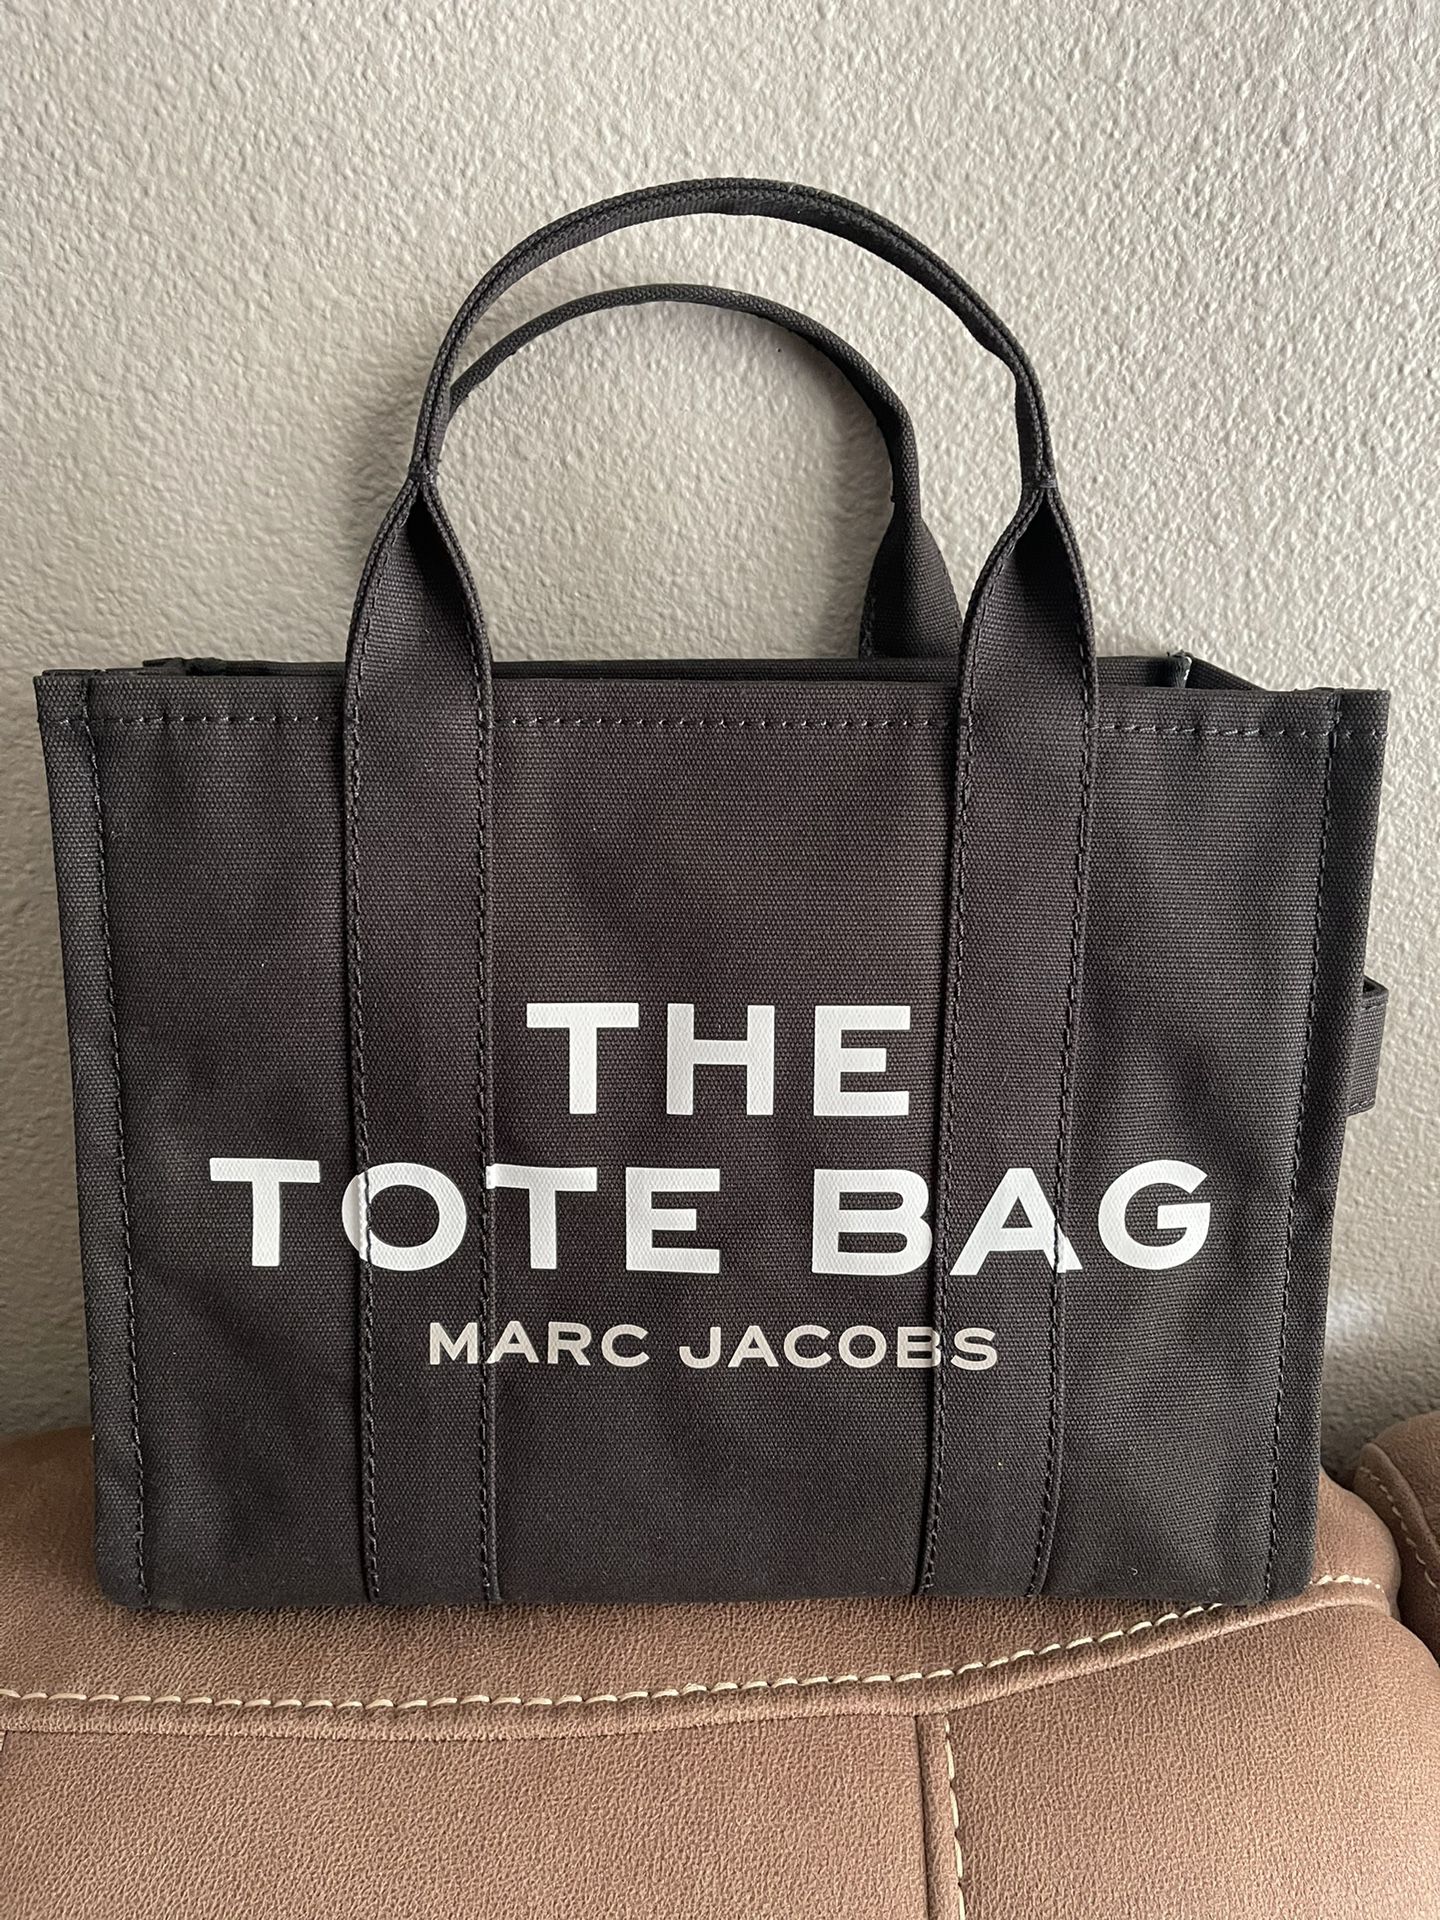 Marc Jacobs Medium Tote Canvas Bag.